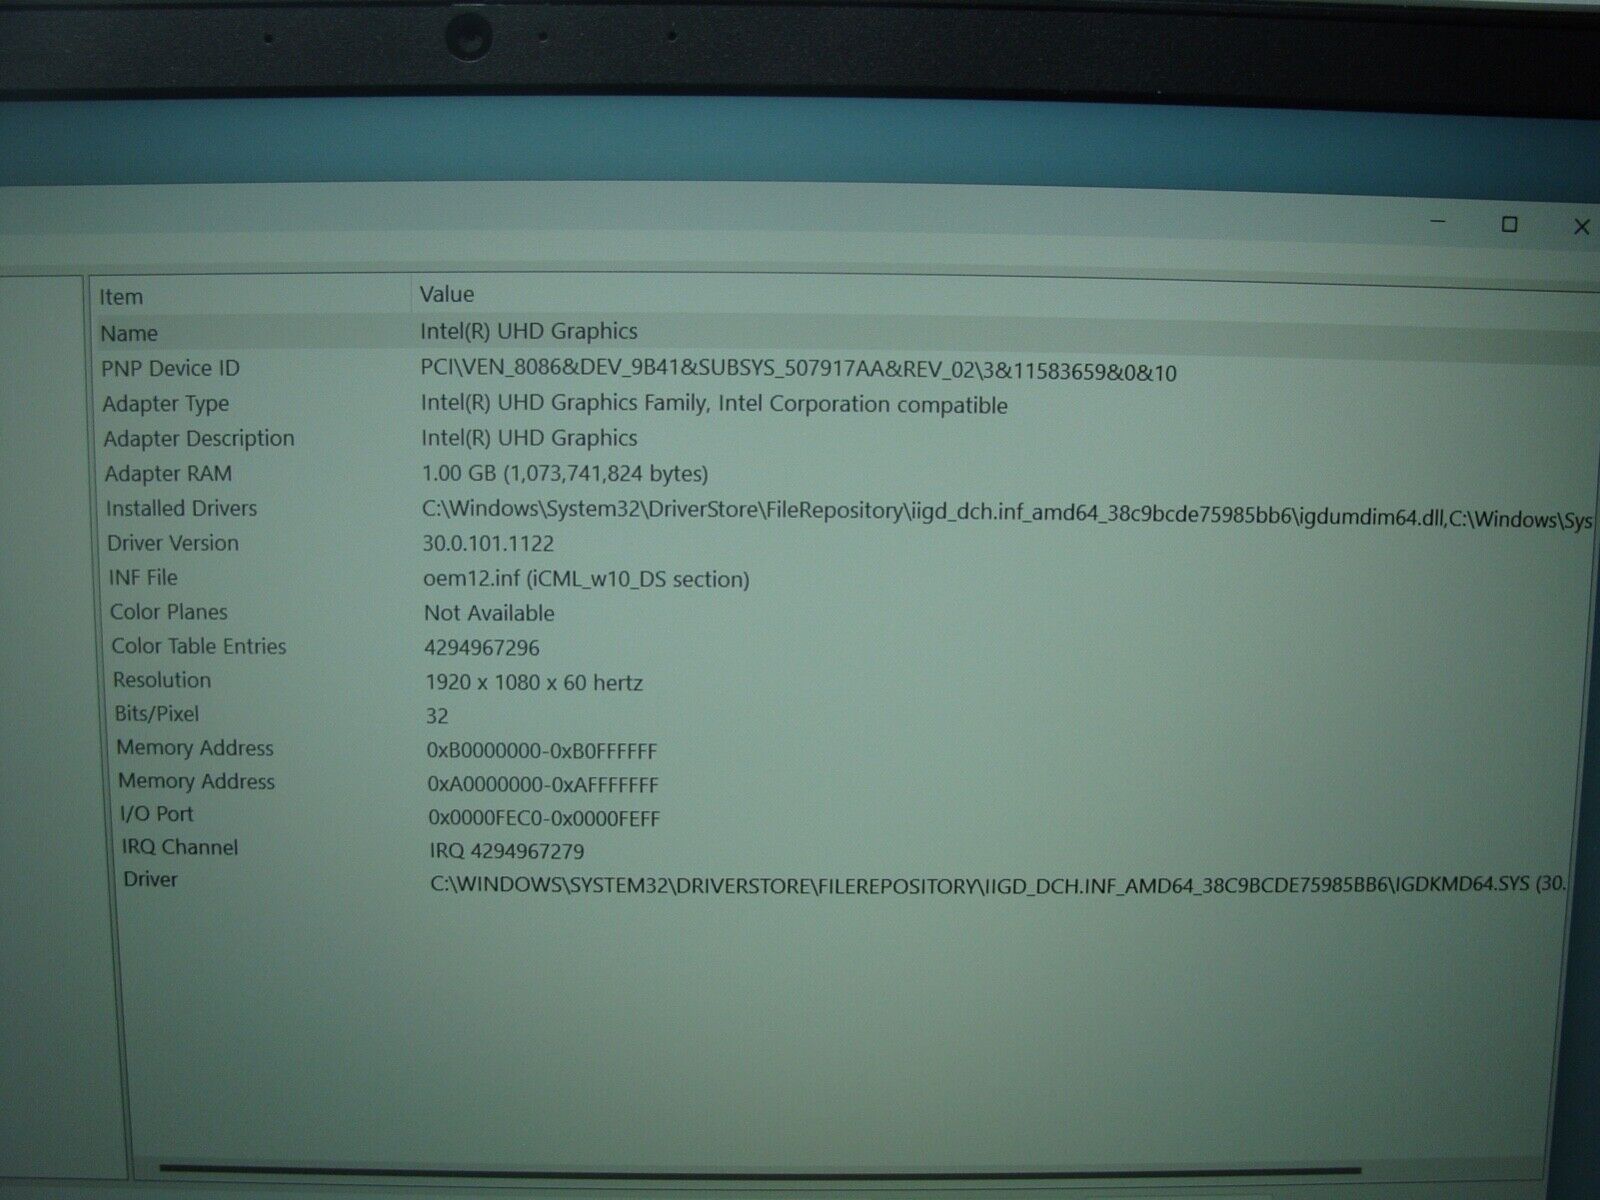 Warranty on Lenovo ThinkPad E15 15.6